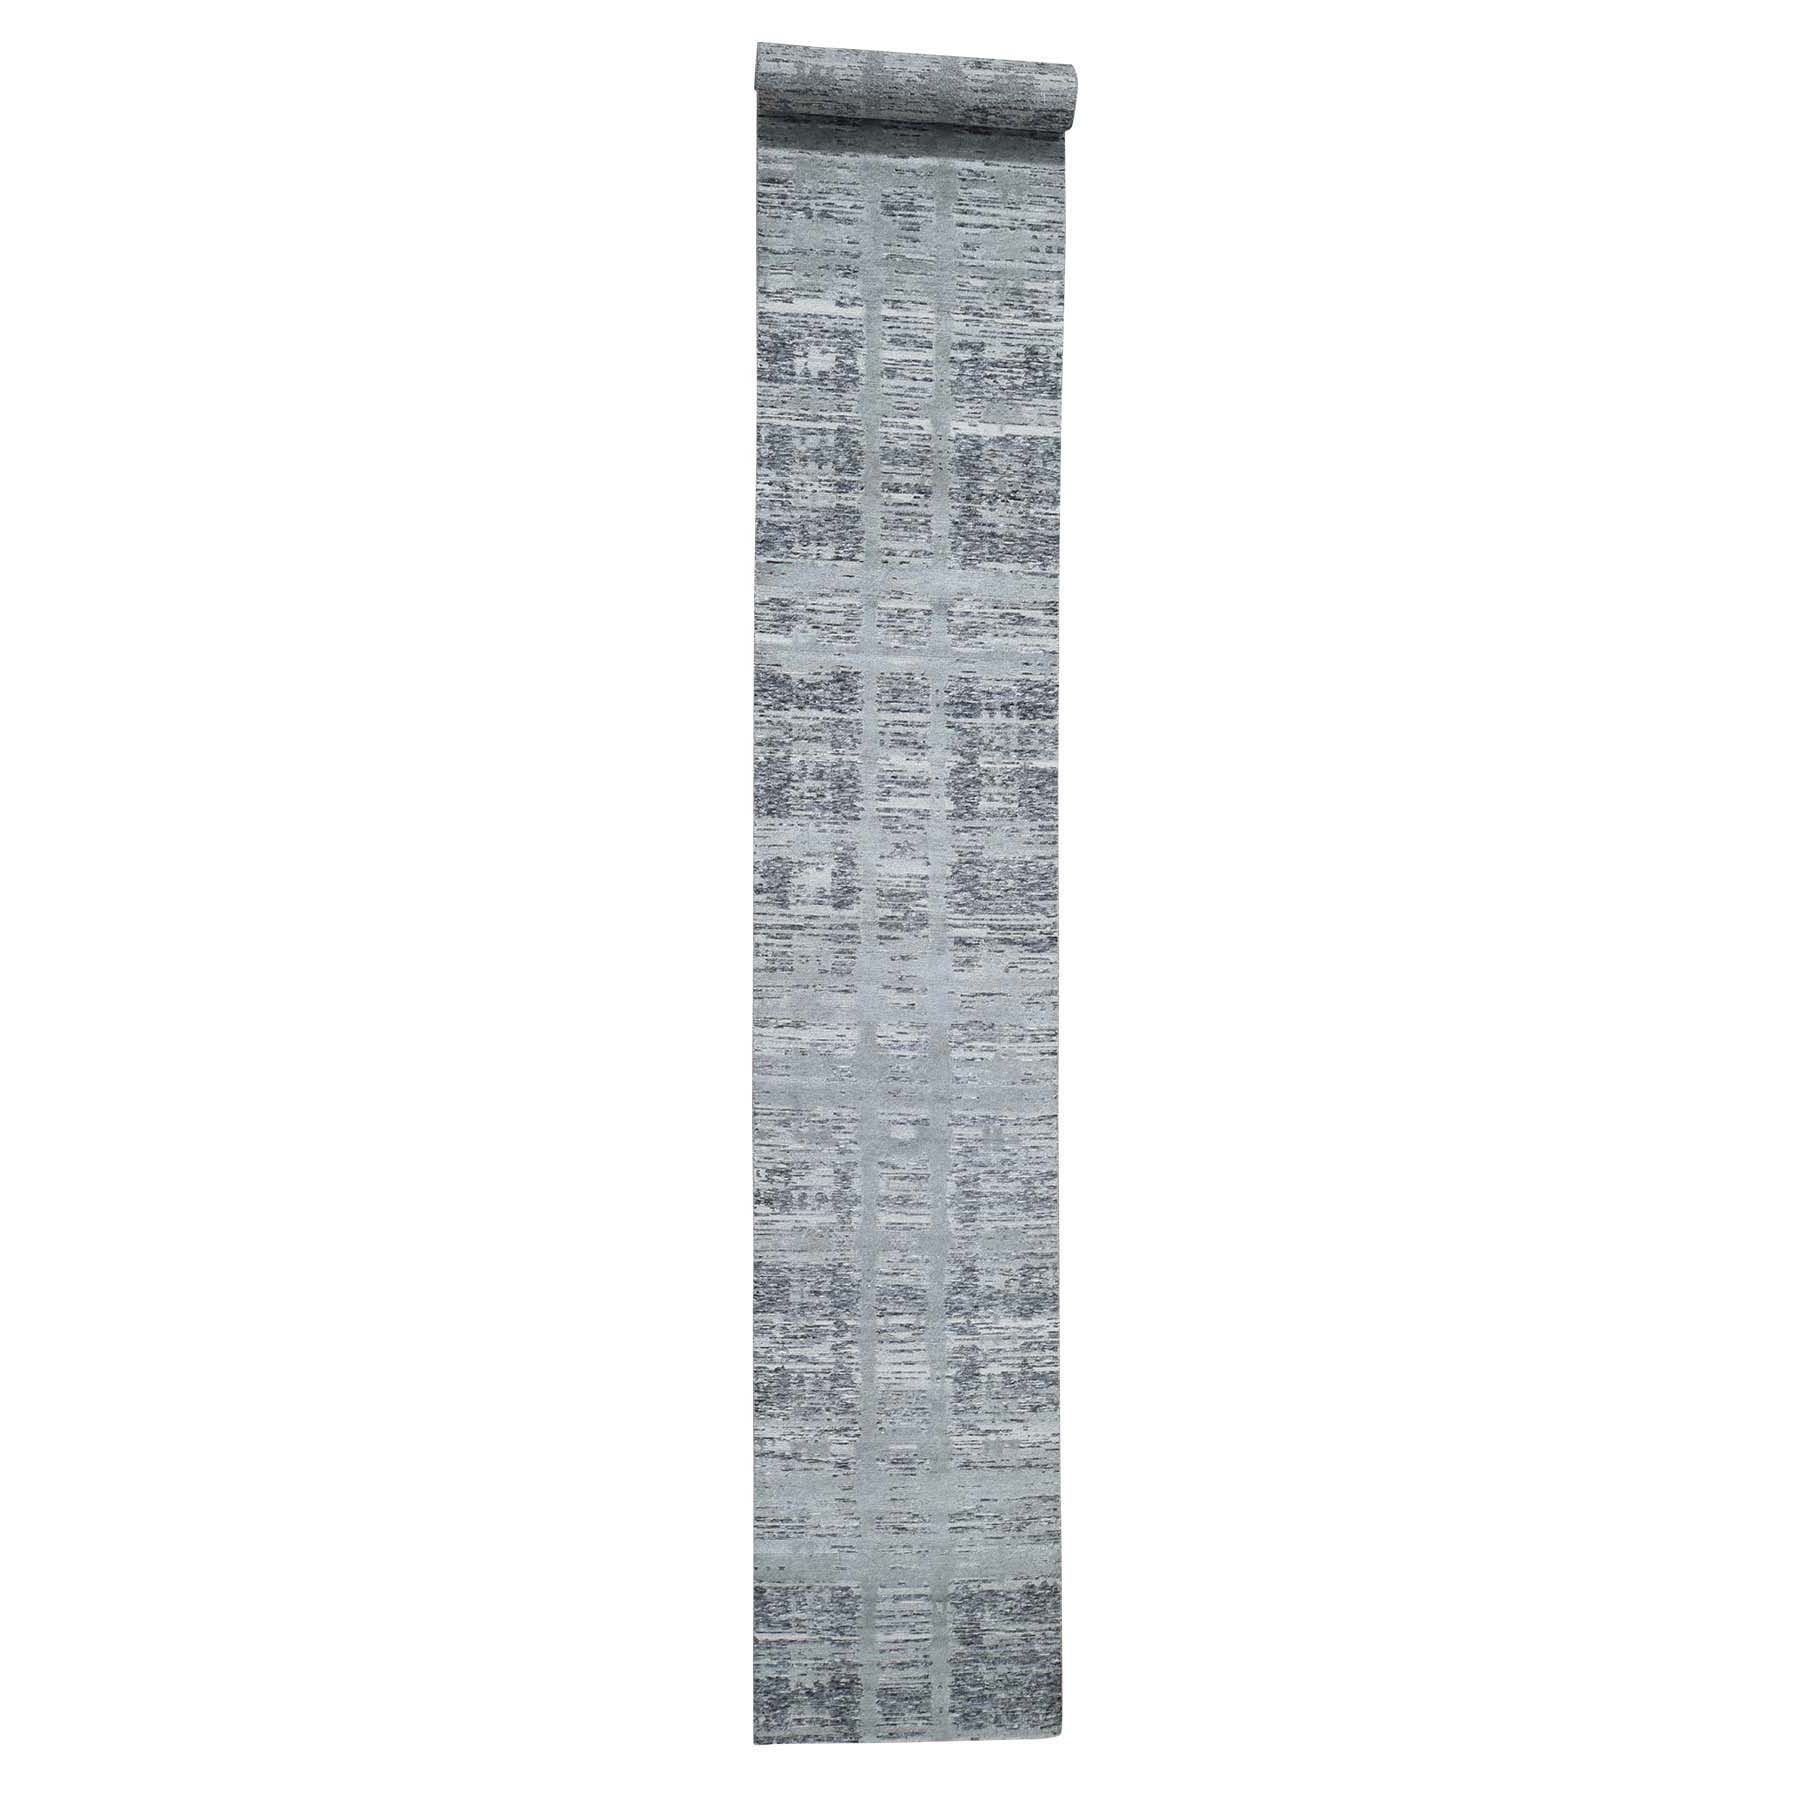 2'6"x17'10" Hand Spun Gray Undyed Natural Wool Modern XL Runner Oriental Hand Woven Rug 